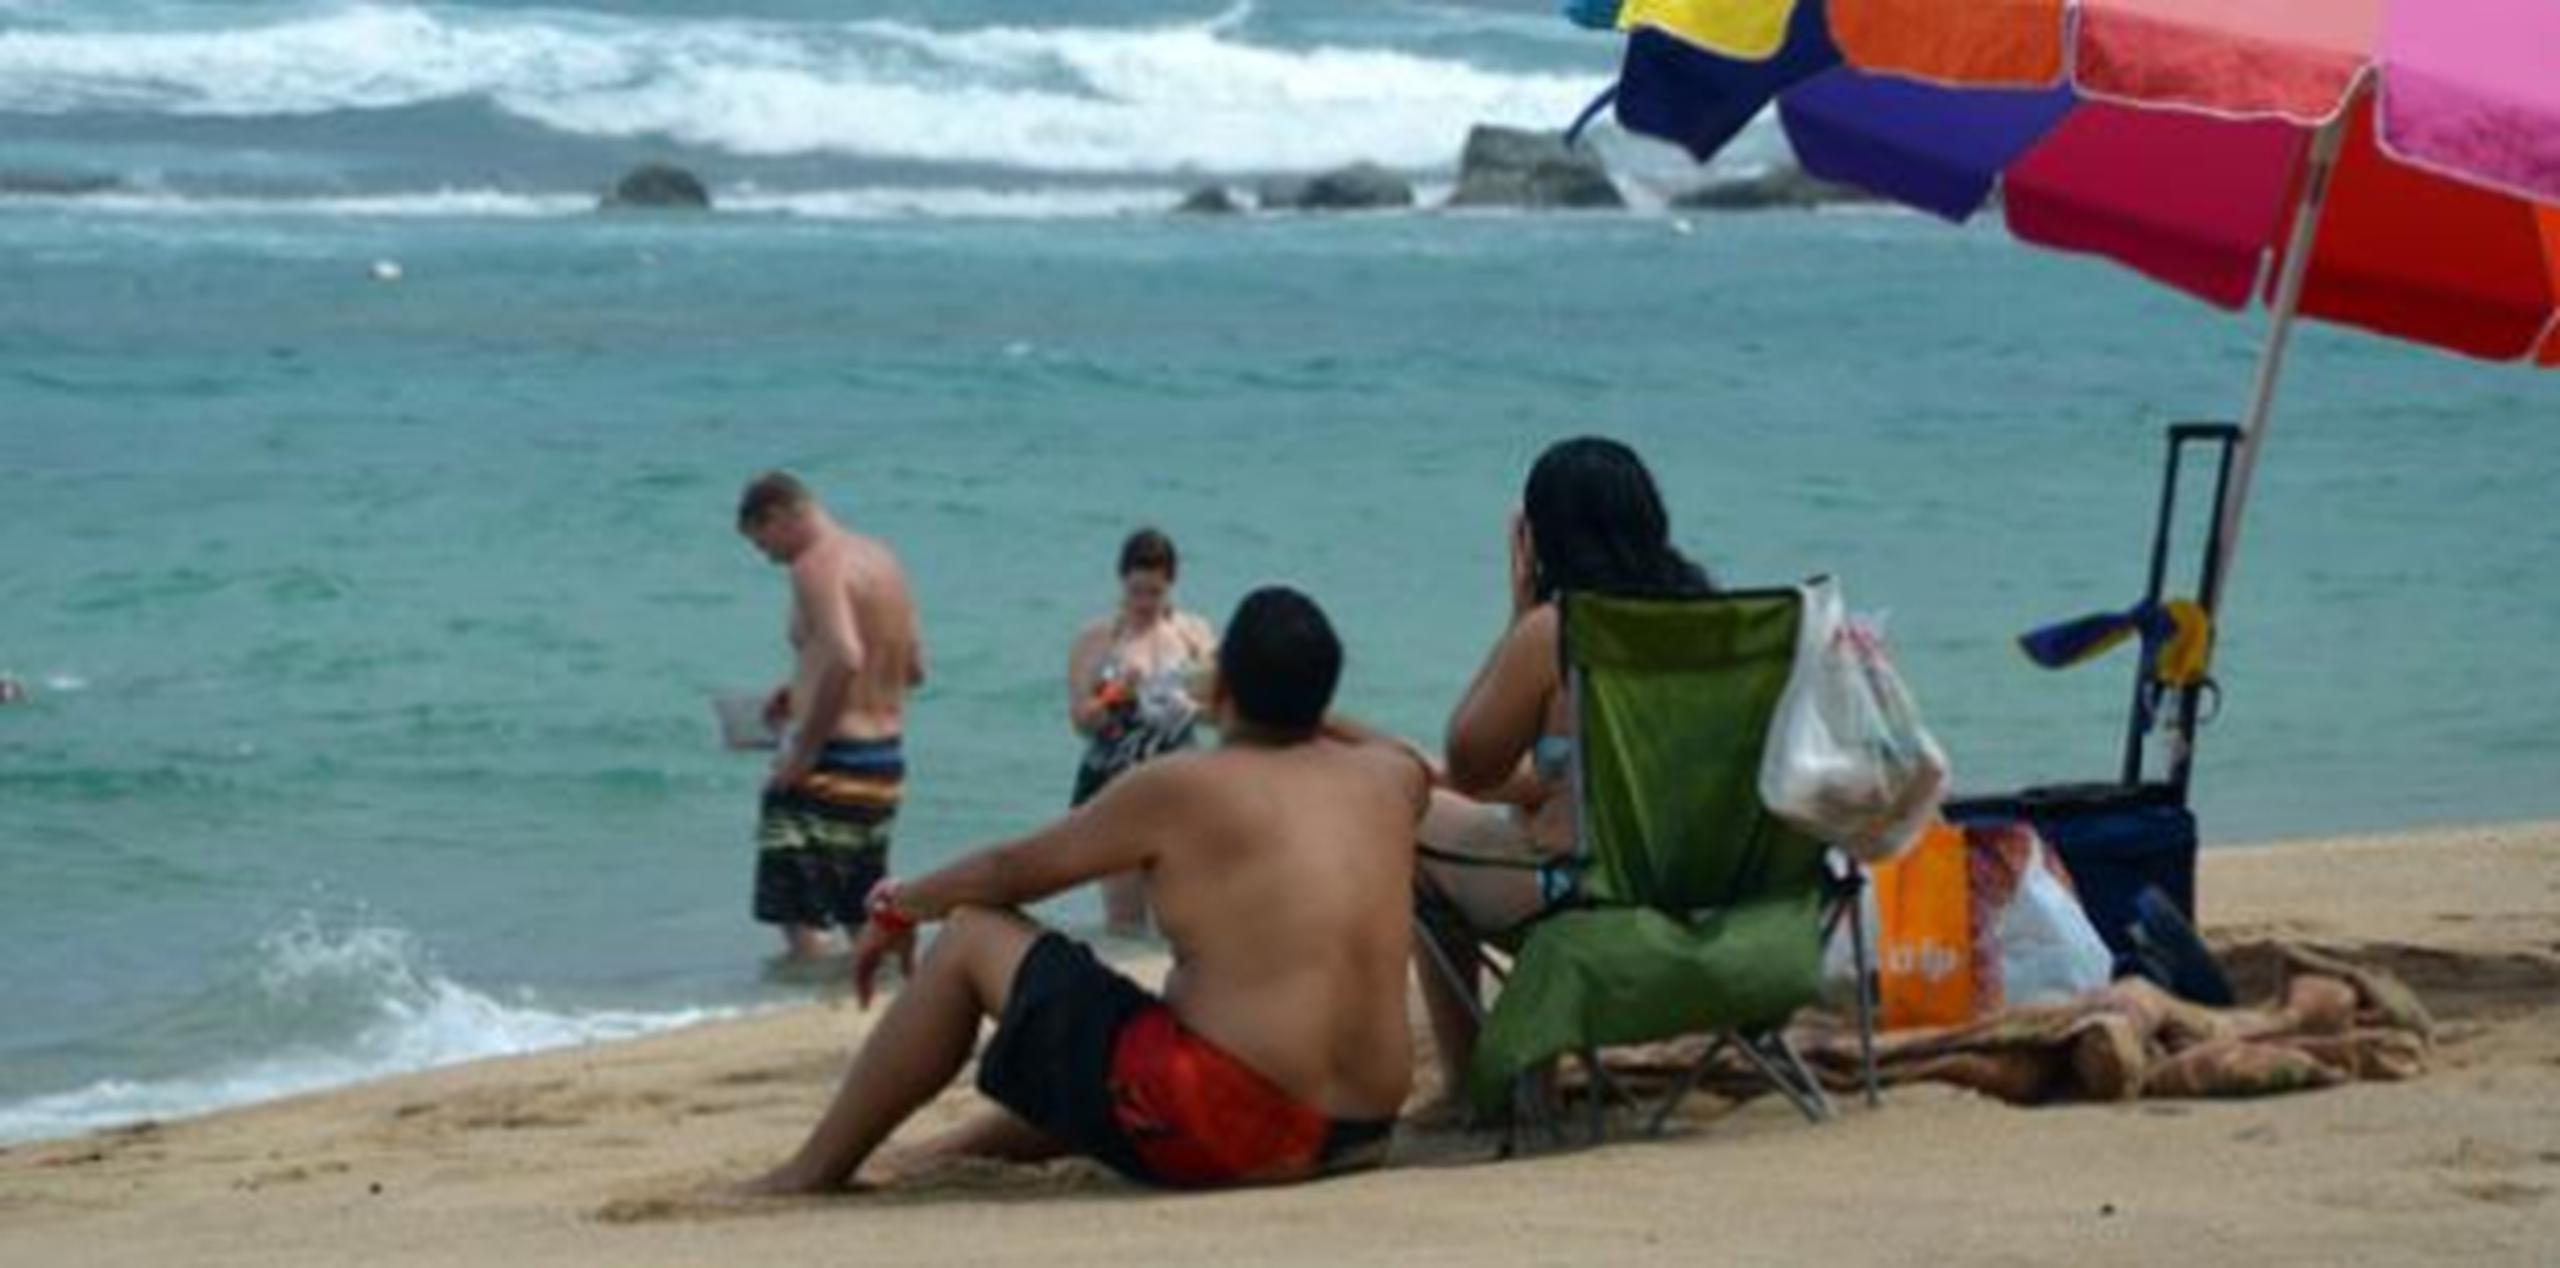 Entrar a las playas en prácticamente cualquier costa de la Isla es un riesgo extremadamente alto para la vida. (Archivo)